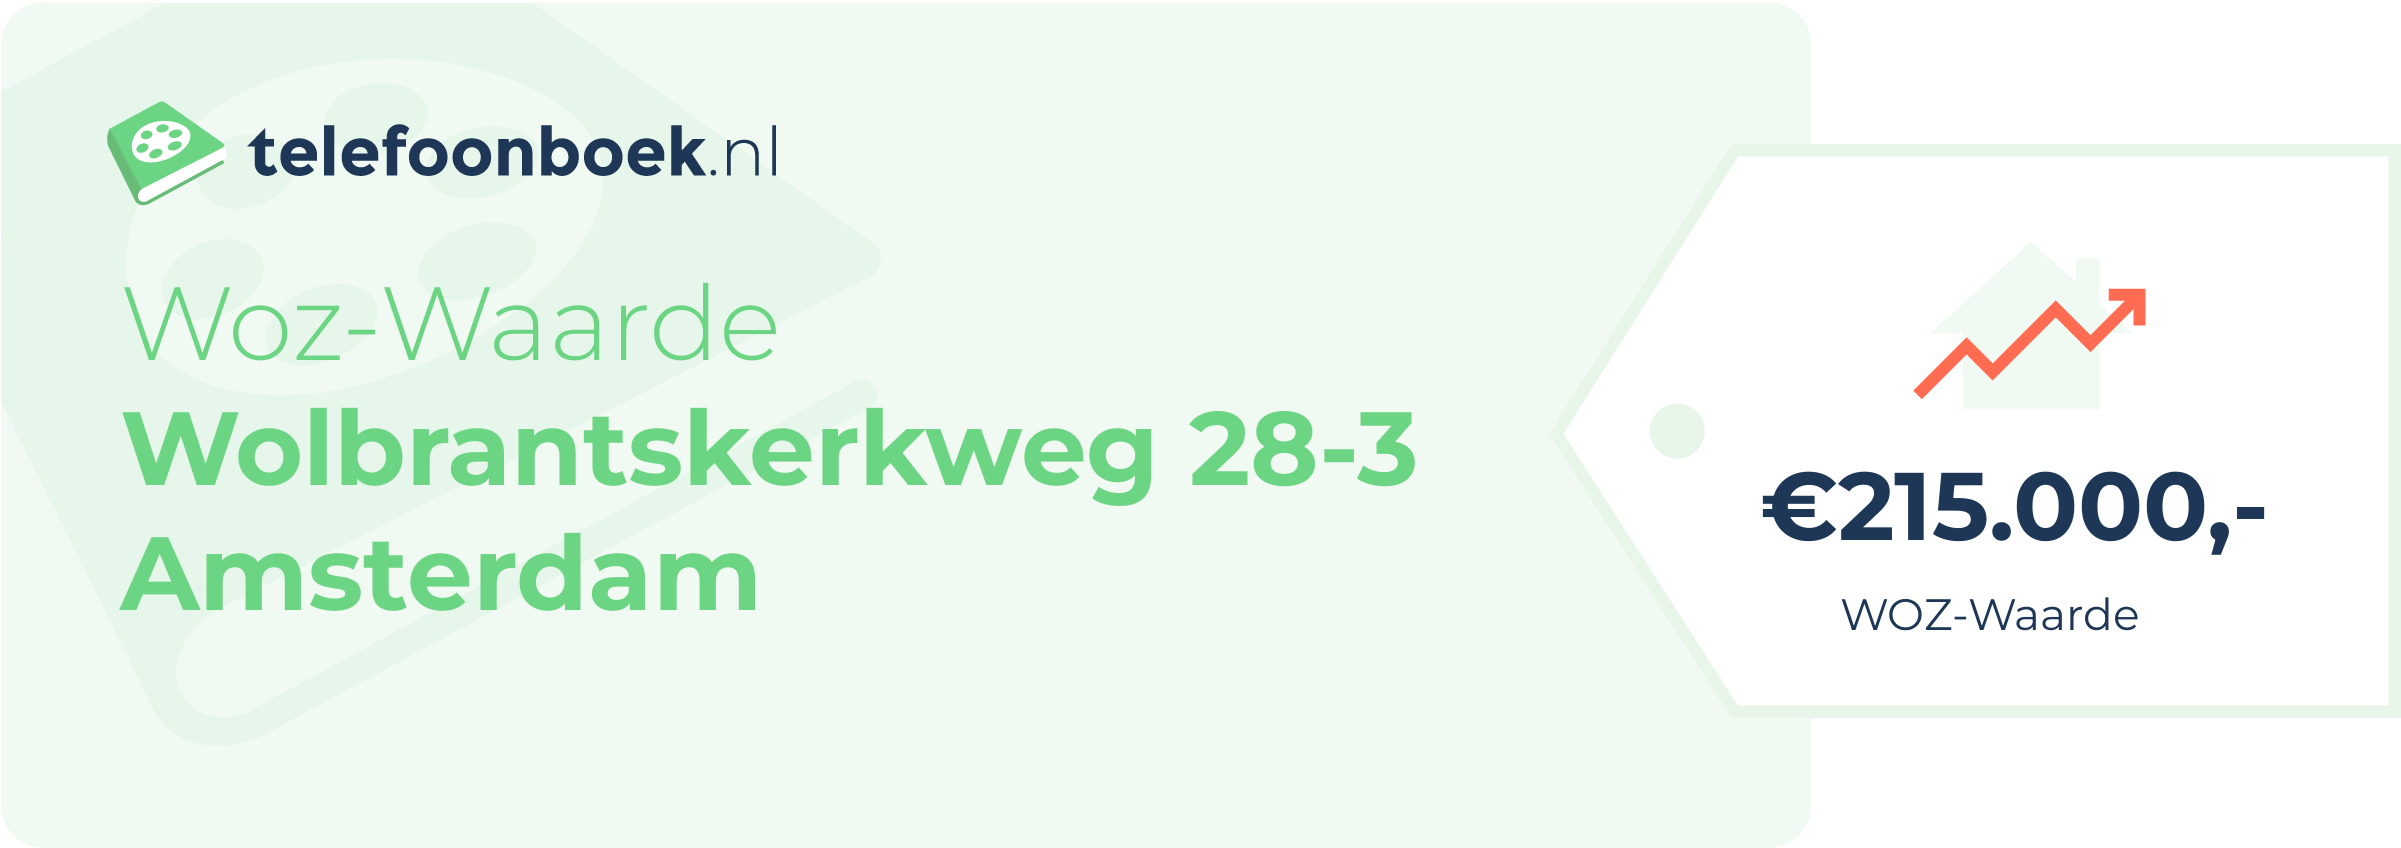 WOZ-waarde Wolbrantskerkweg 28-3 Amsterdam